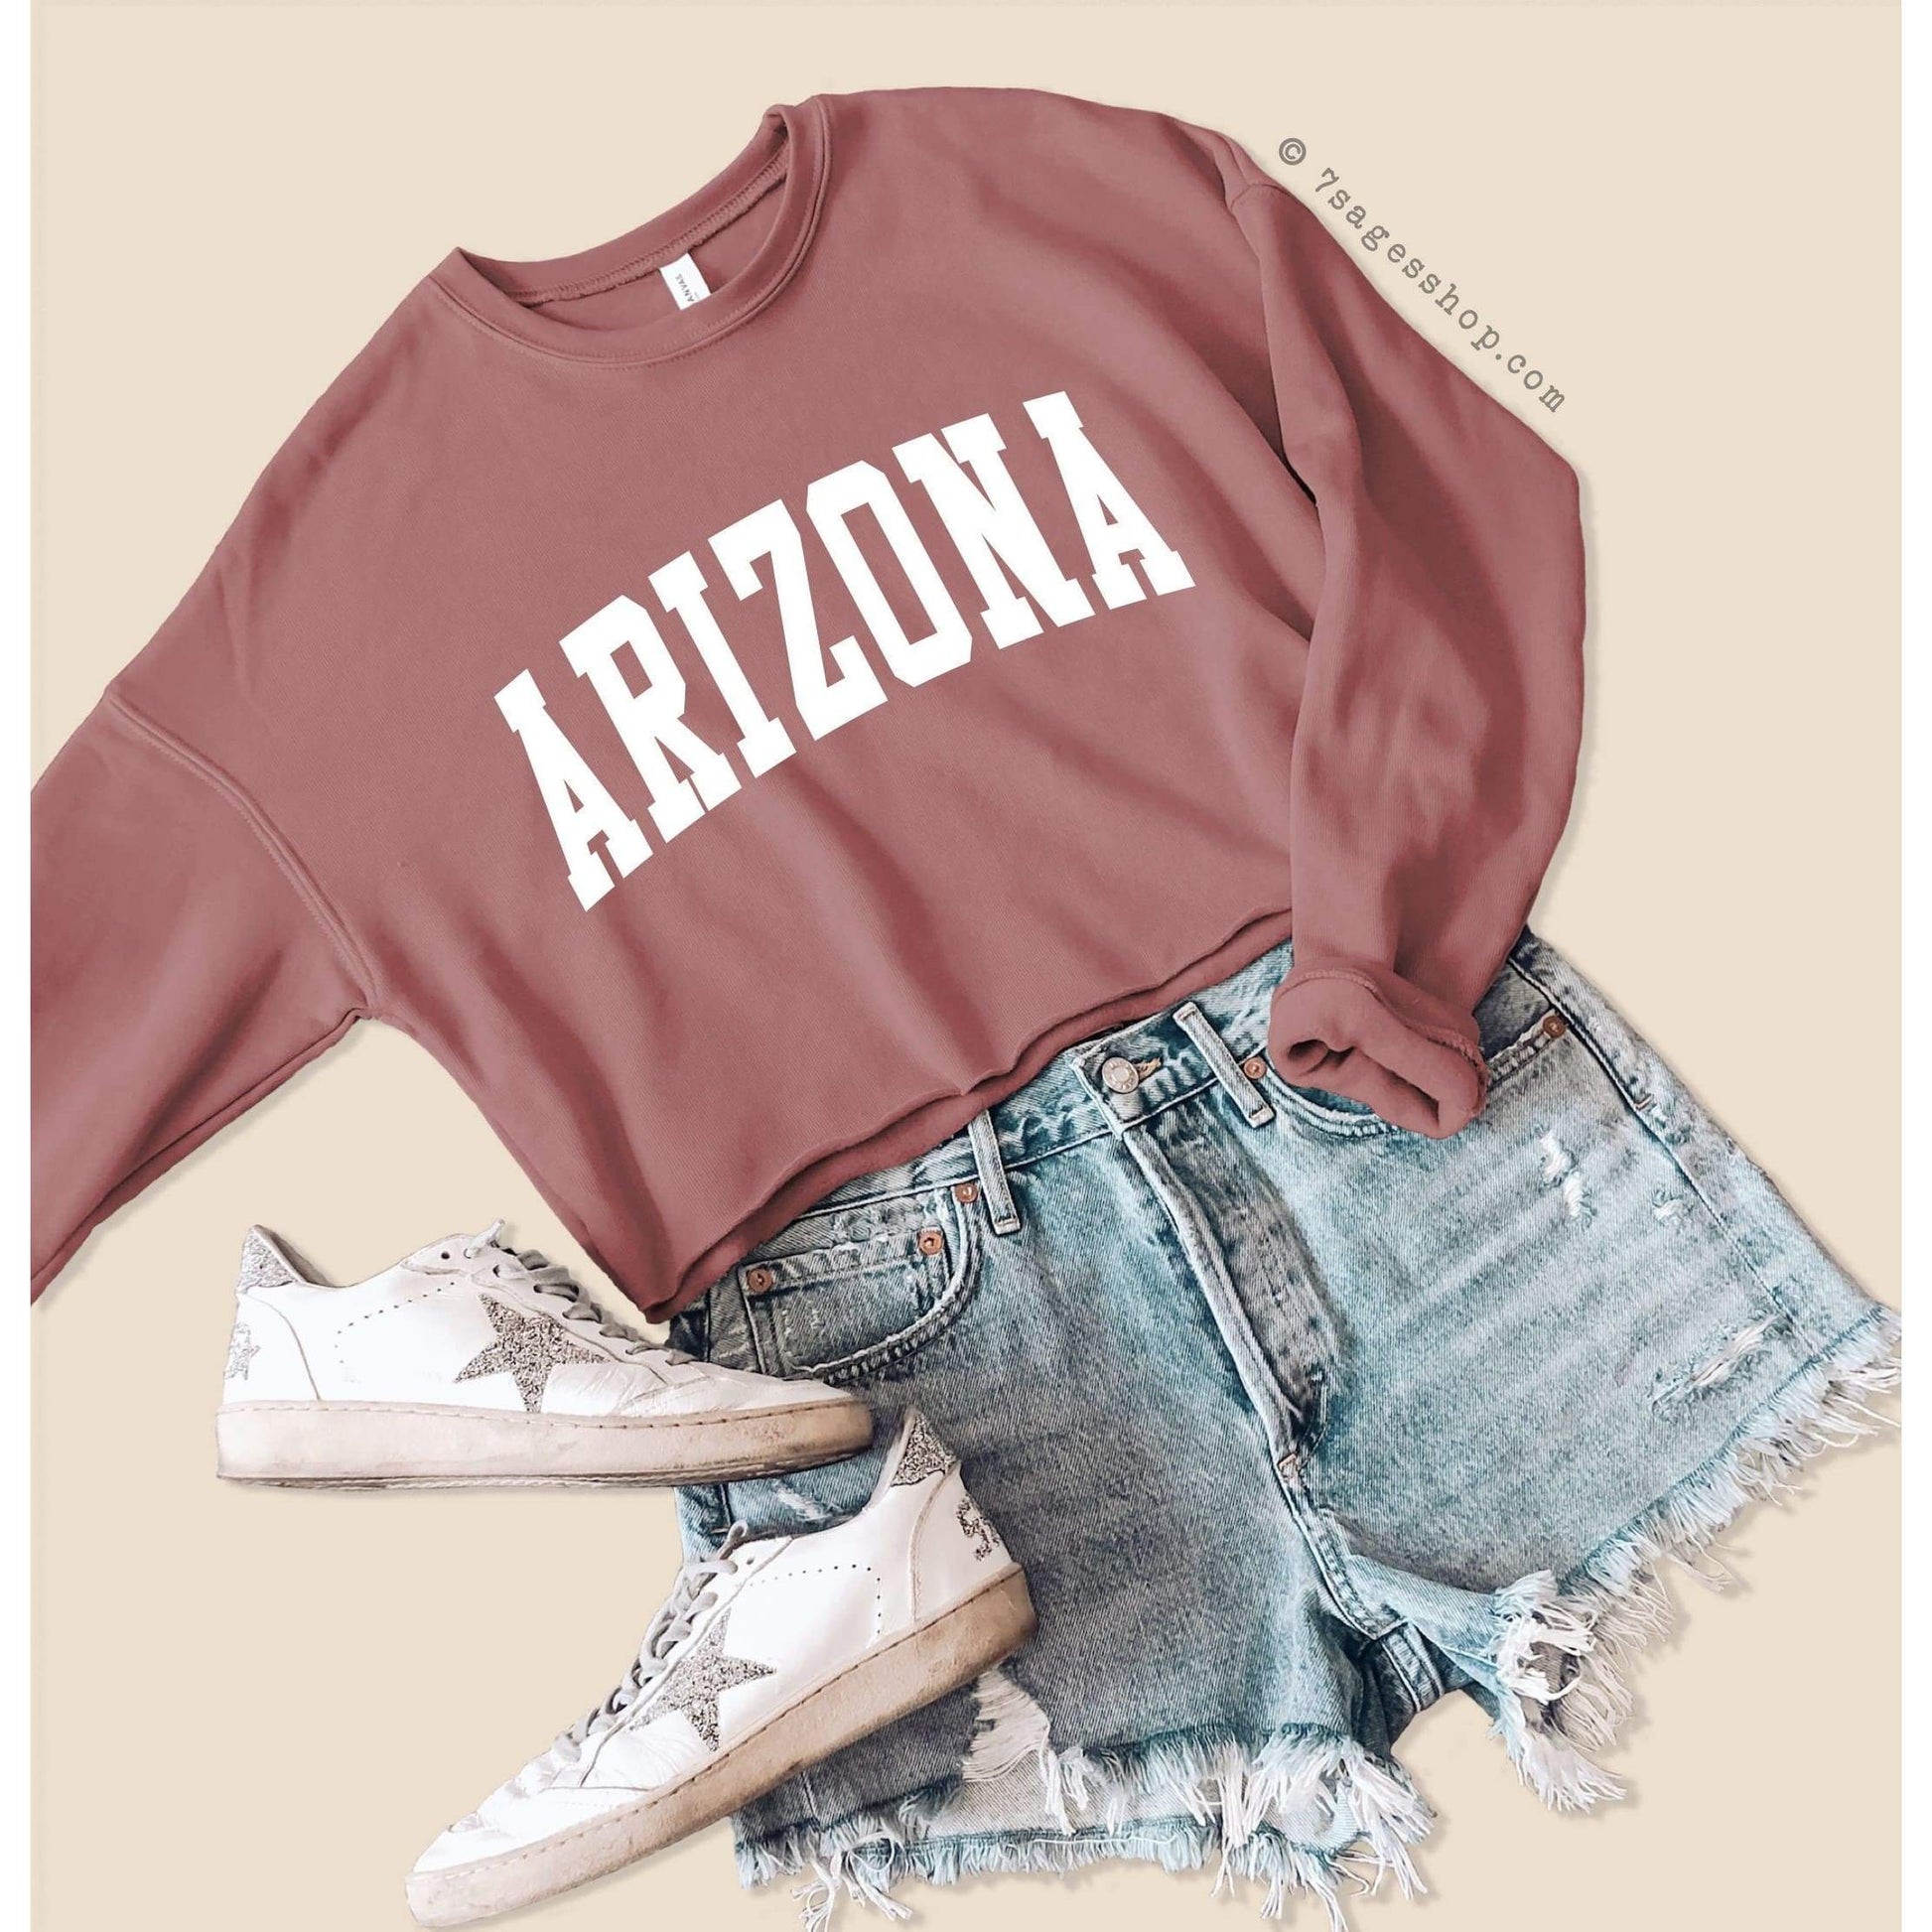 Arizona Cropped Sweatshirt - Arizona State Sweatshirt - Arizona Shirts - University of Arizona Crop Top - Fleece Sweatshirt